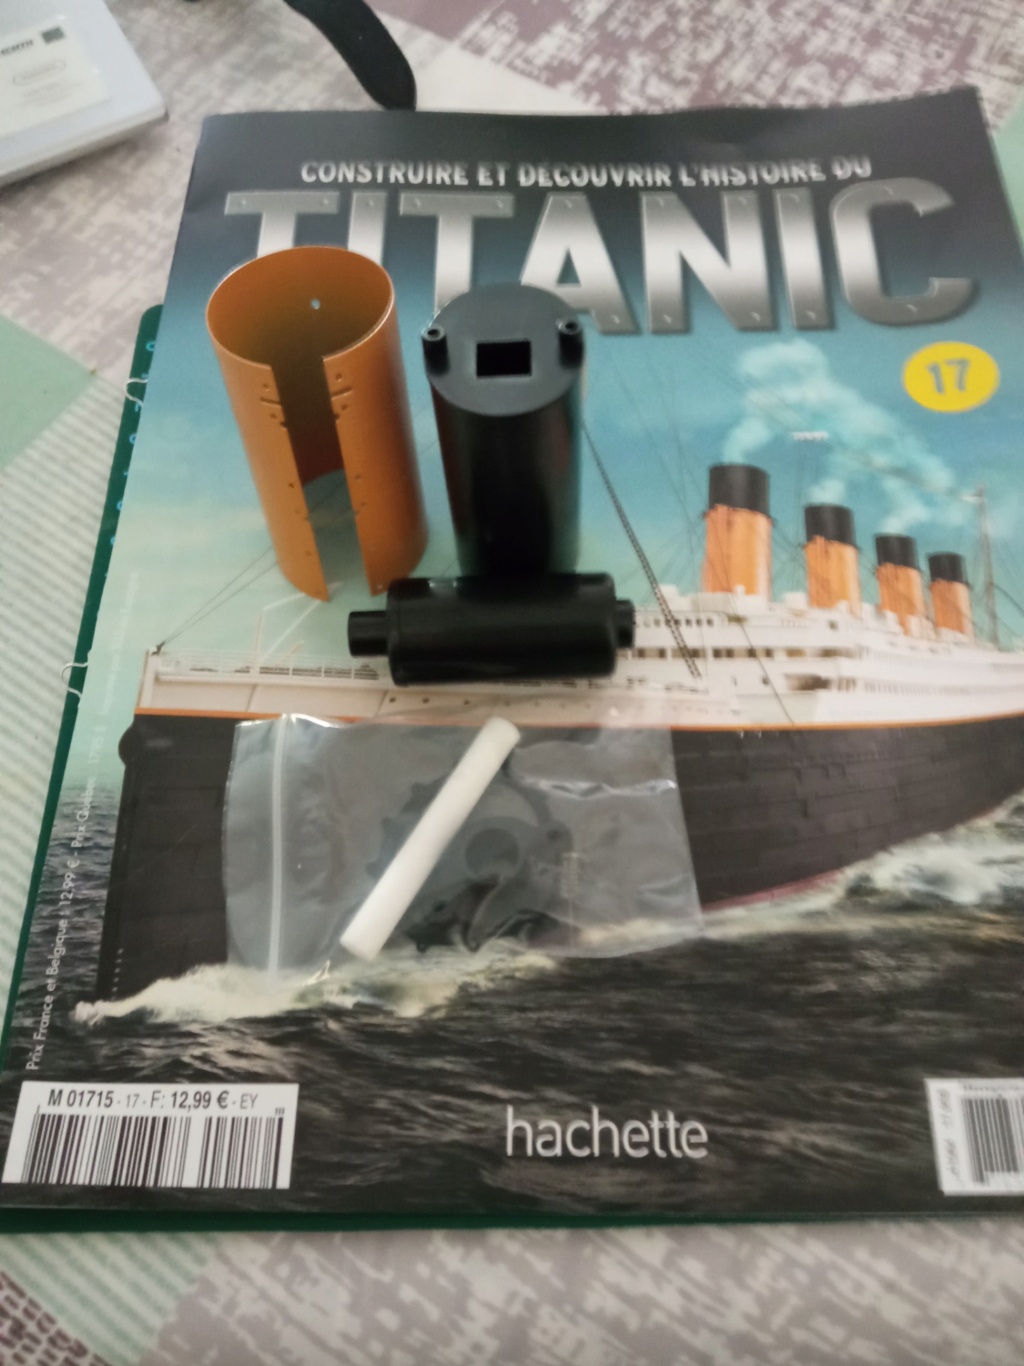 RMS Titanic [Hachette 1/200°] de clg78 - Page 5 17_111